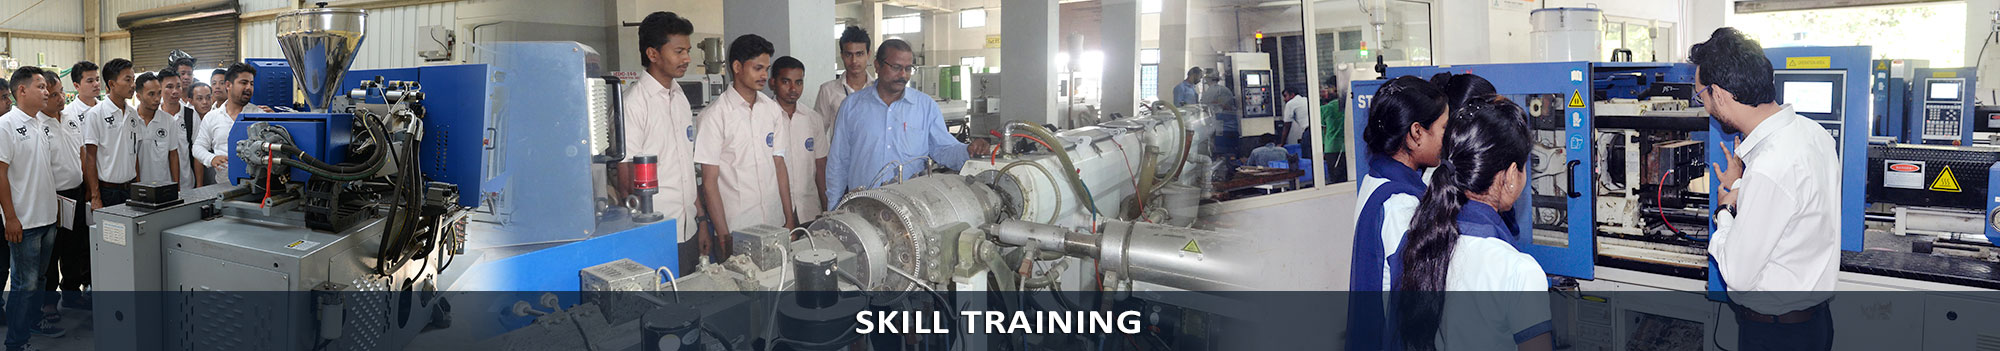 Skill Training Programs